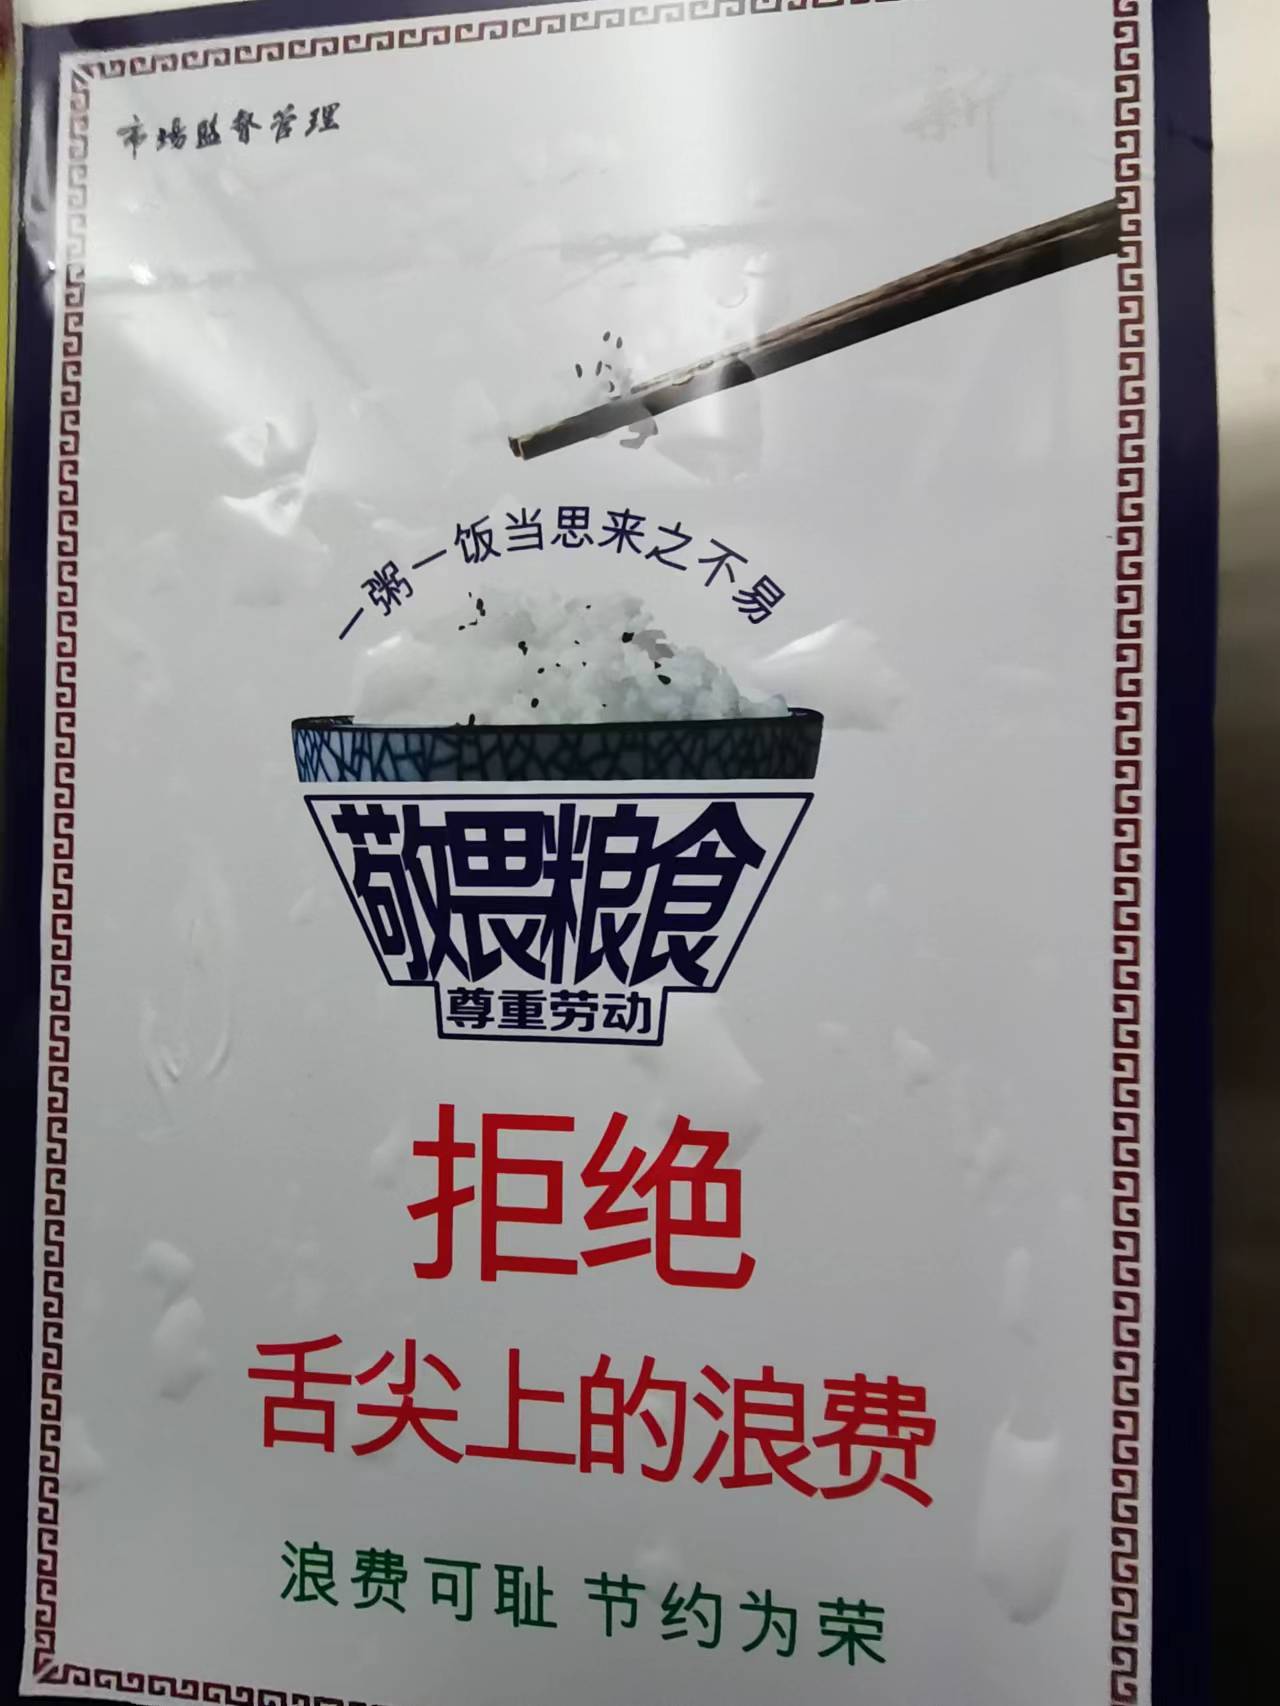 “拒绝舌尖上的浪费”等宣传标语在酒店餐厅、电梯间随处可见。吴采平/摄